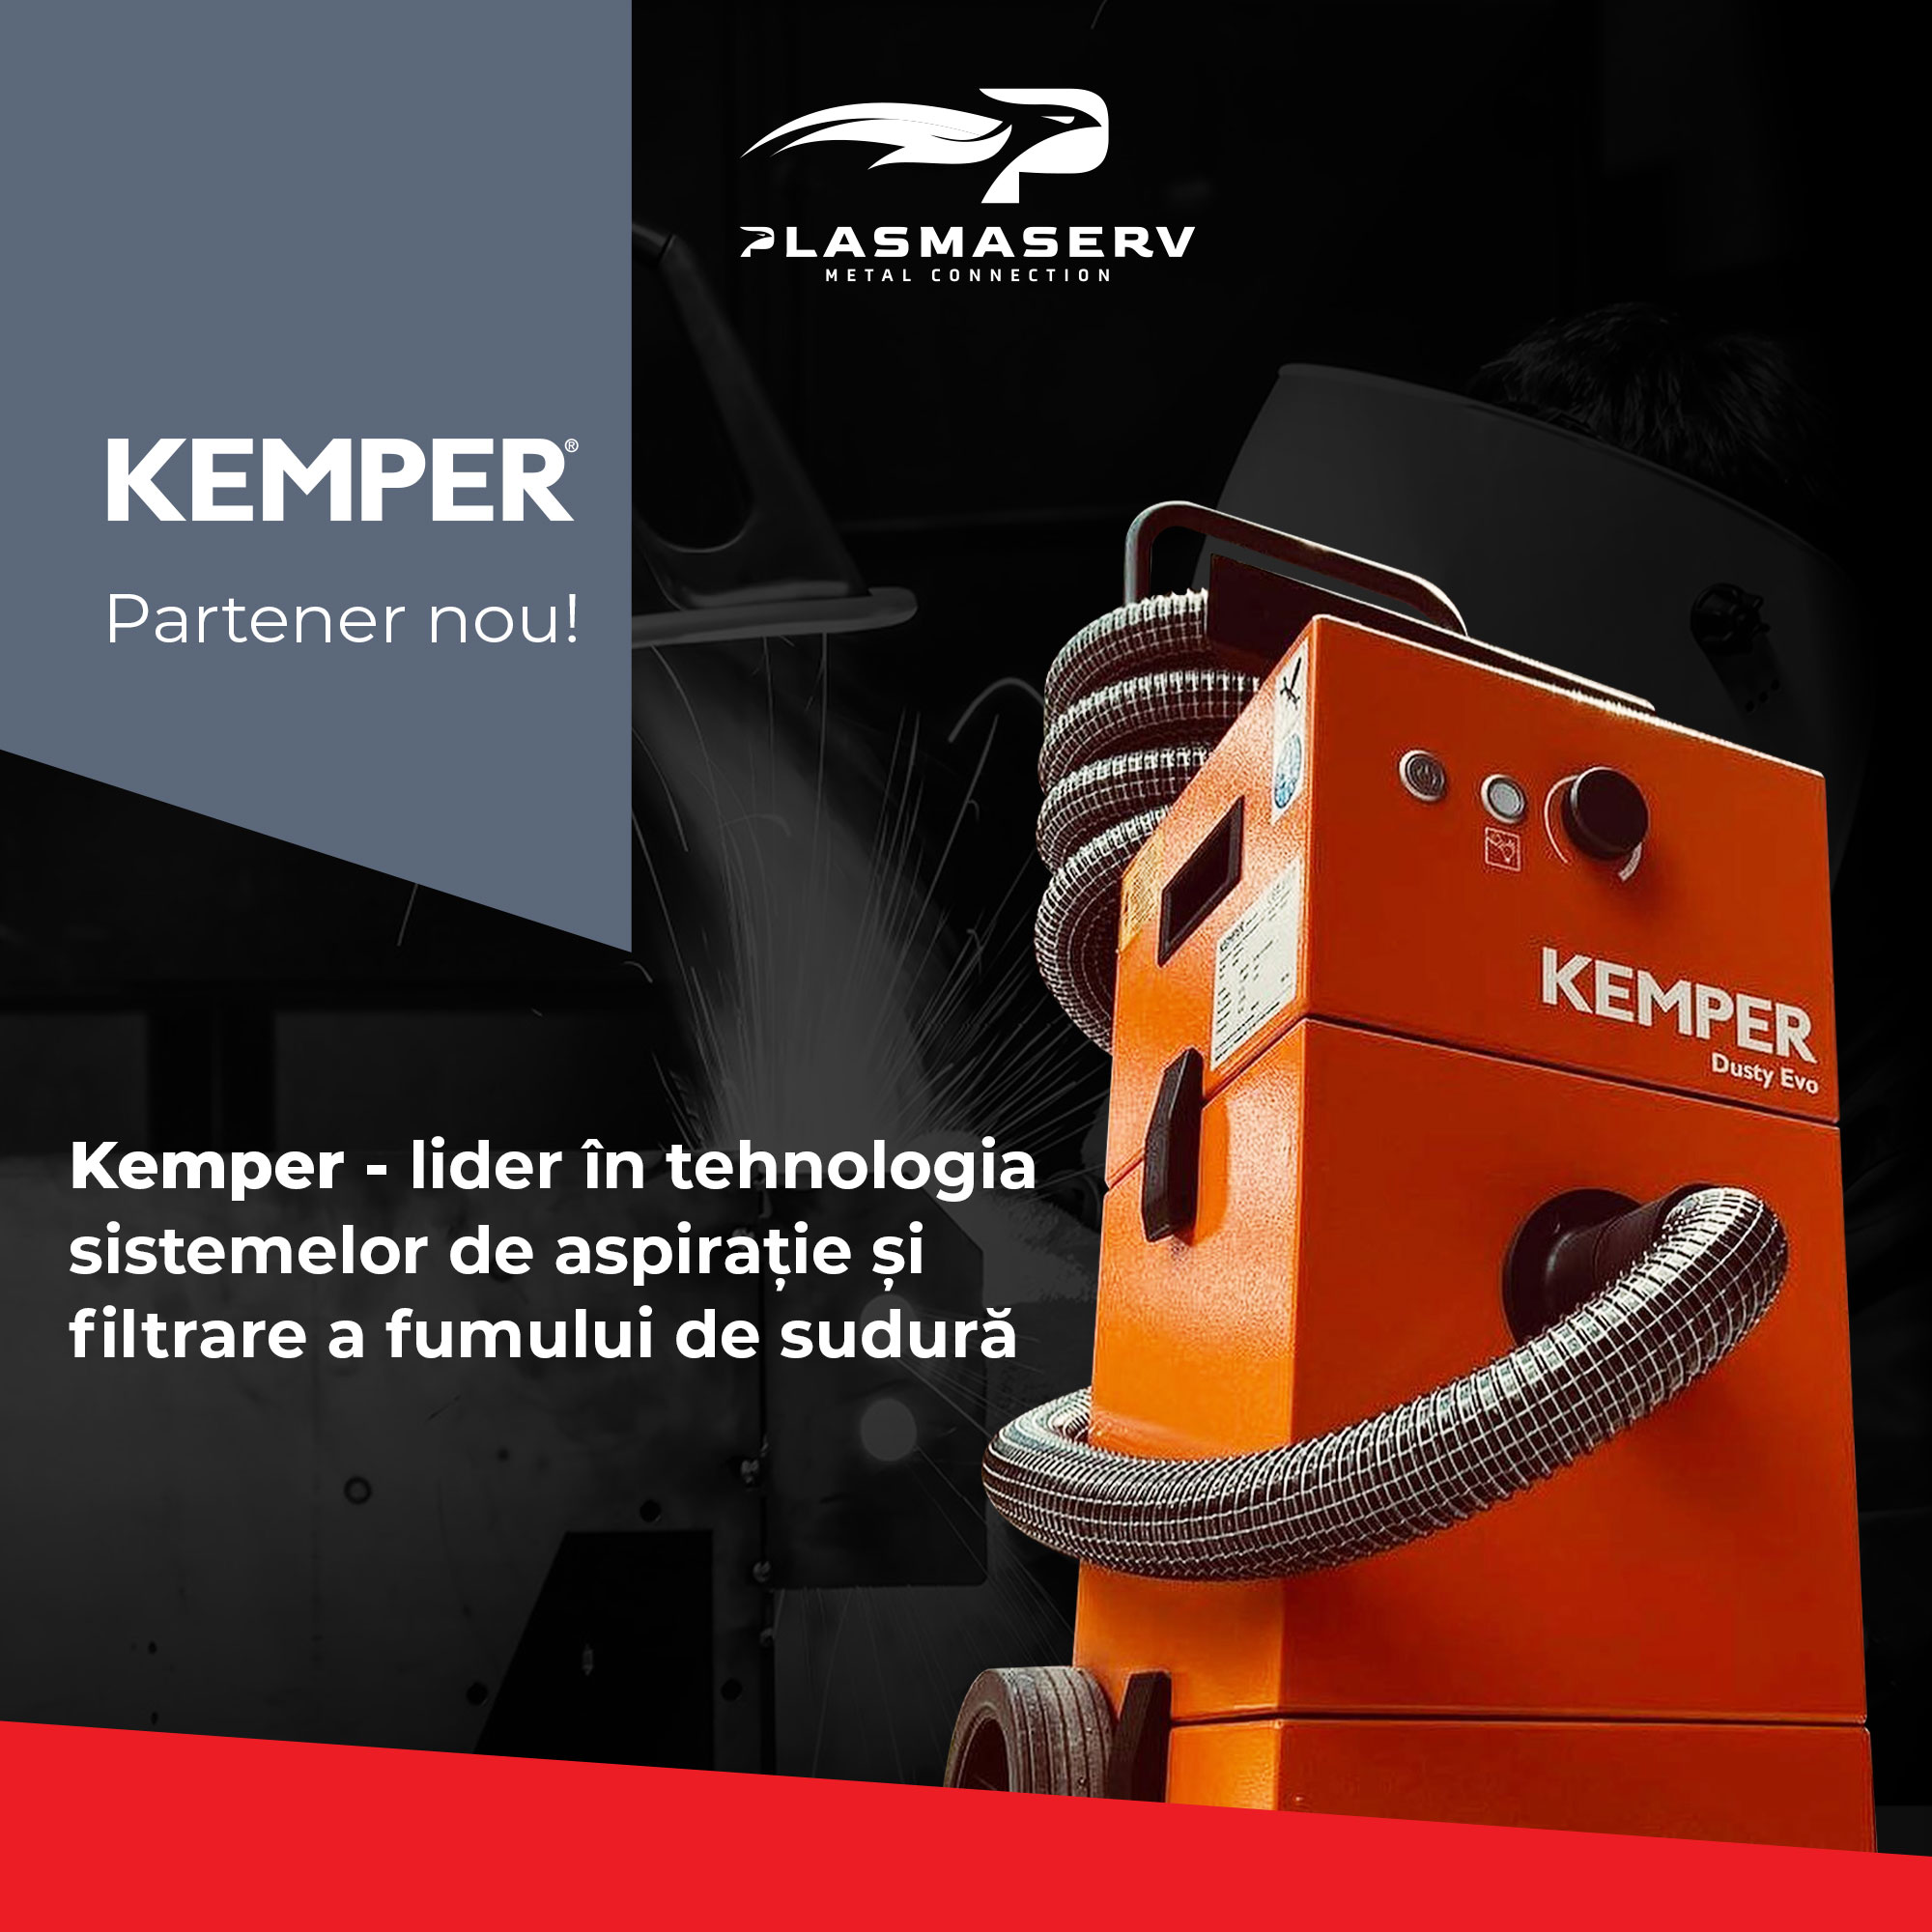 Kemper, brand cu renume în  producția sistemelor de extracție și filtrare a fumului de sudură, este partener Plasmaserv Metal Connection